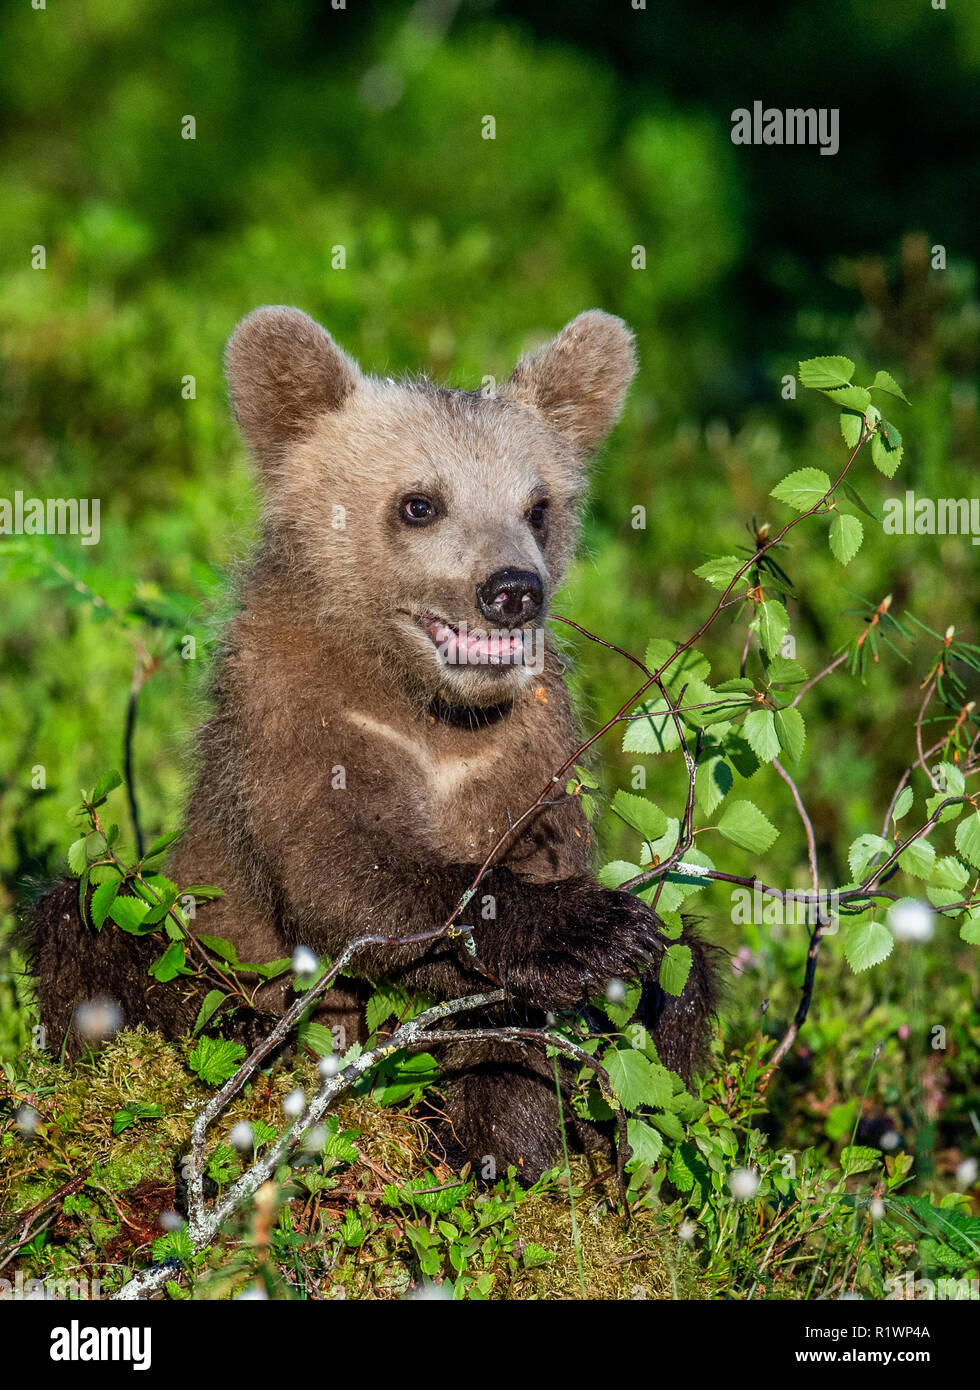 Brown bear Cub im Sommer Wald. Wissenschaftlicher Name: Ursus arctos. Natürlichen grünen Hintergrund. Natürlicher Lebensraum. Stockfoto